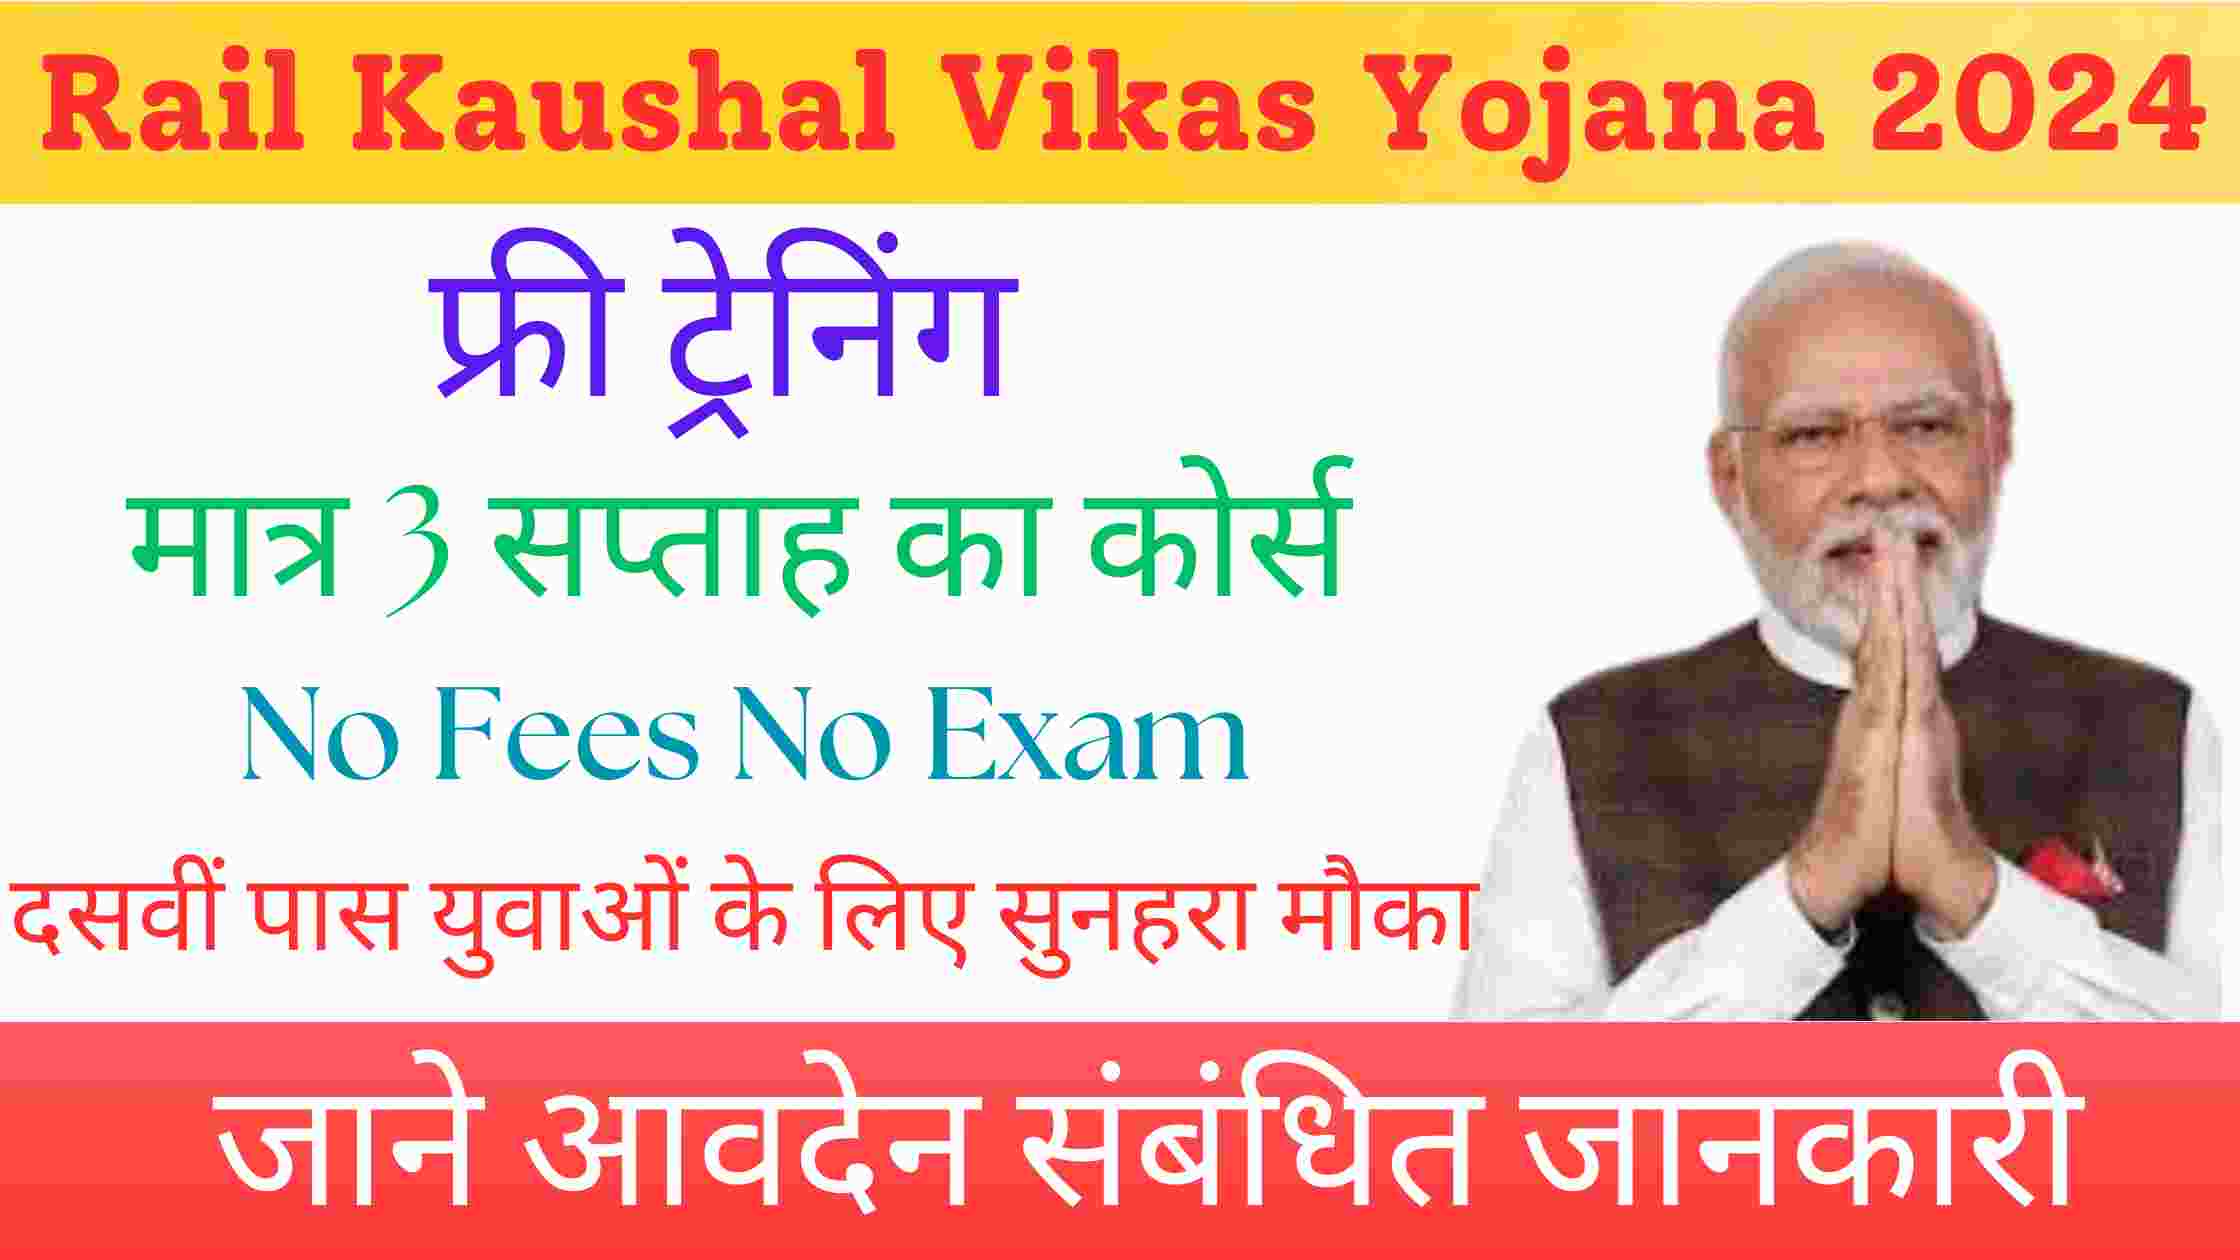 Rail Kaushal Vikas Yojana 2024 | बिना परीक्षा सीधी भर्ती 2024 दसवीं पास युवाओं के लिए सुनहरा मौका जाने आवदेन संबंधित जानकारी